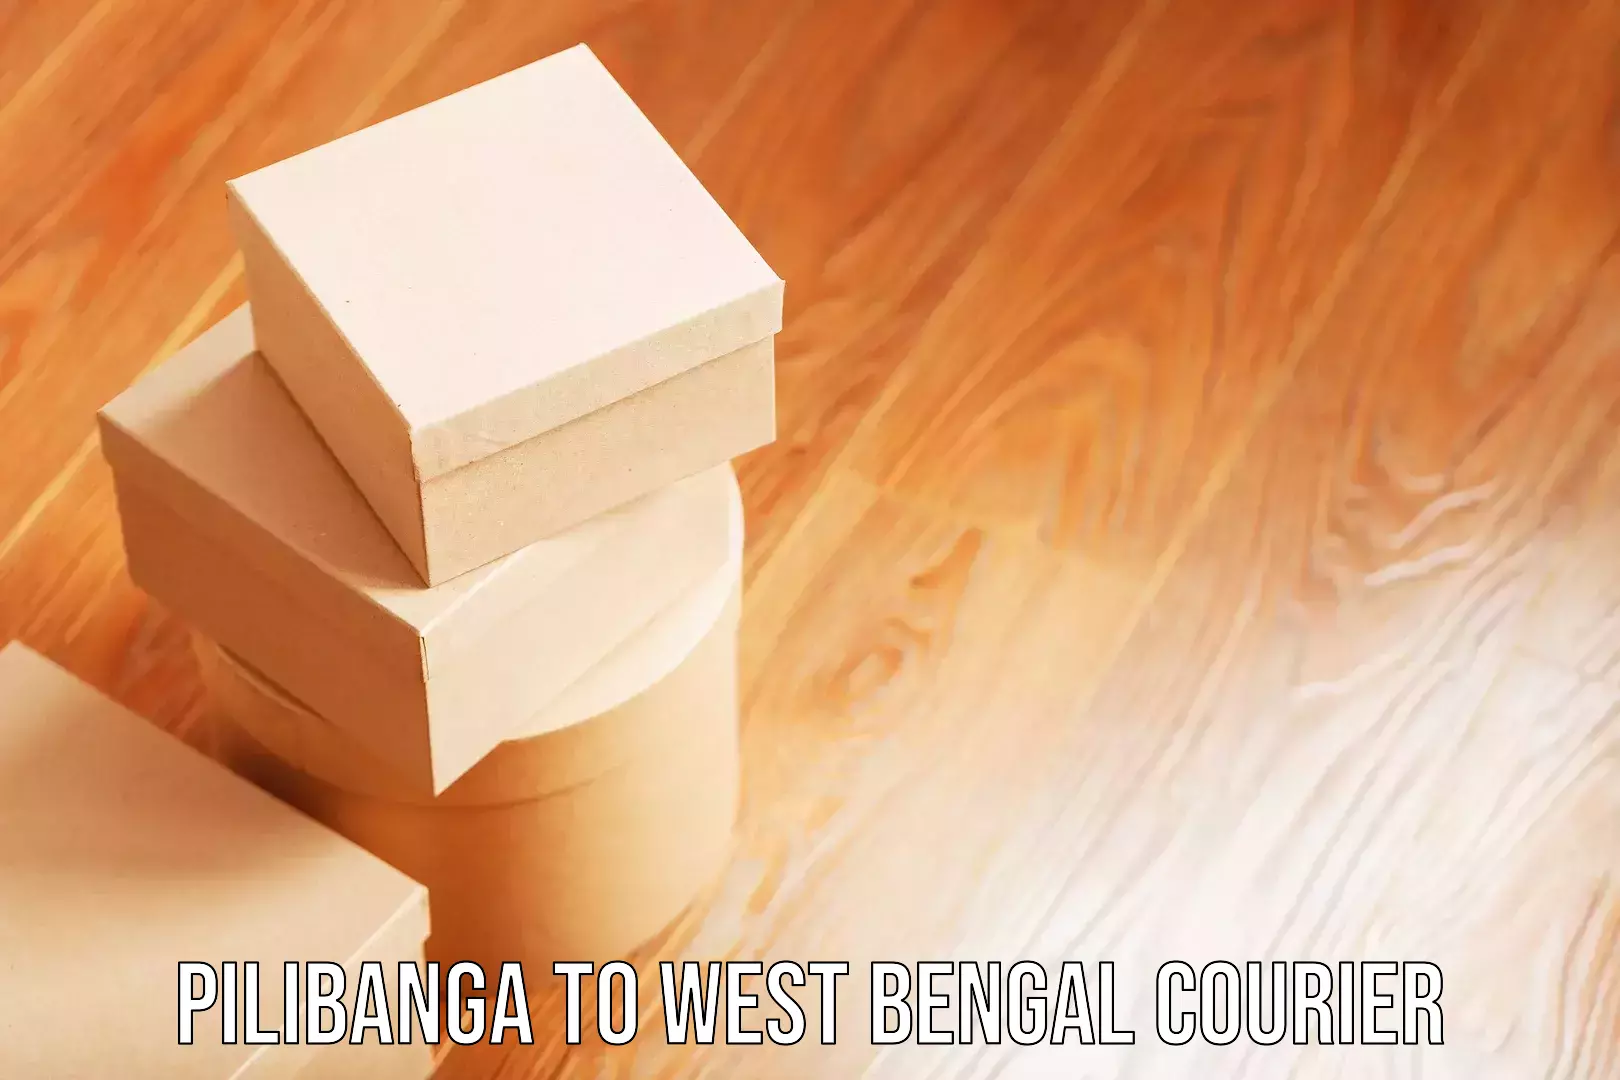 Baggage shipping service Pilibanga to West Bengal